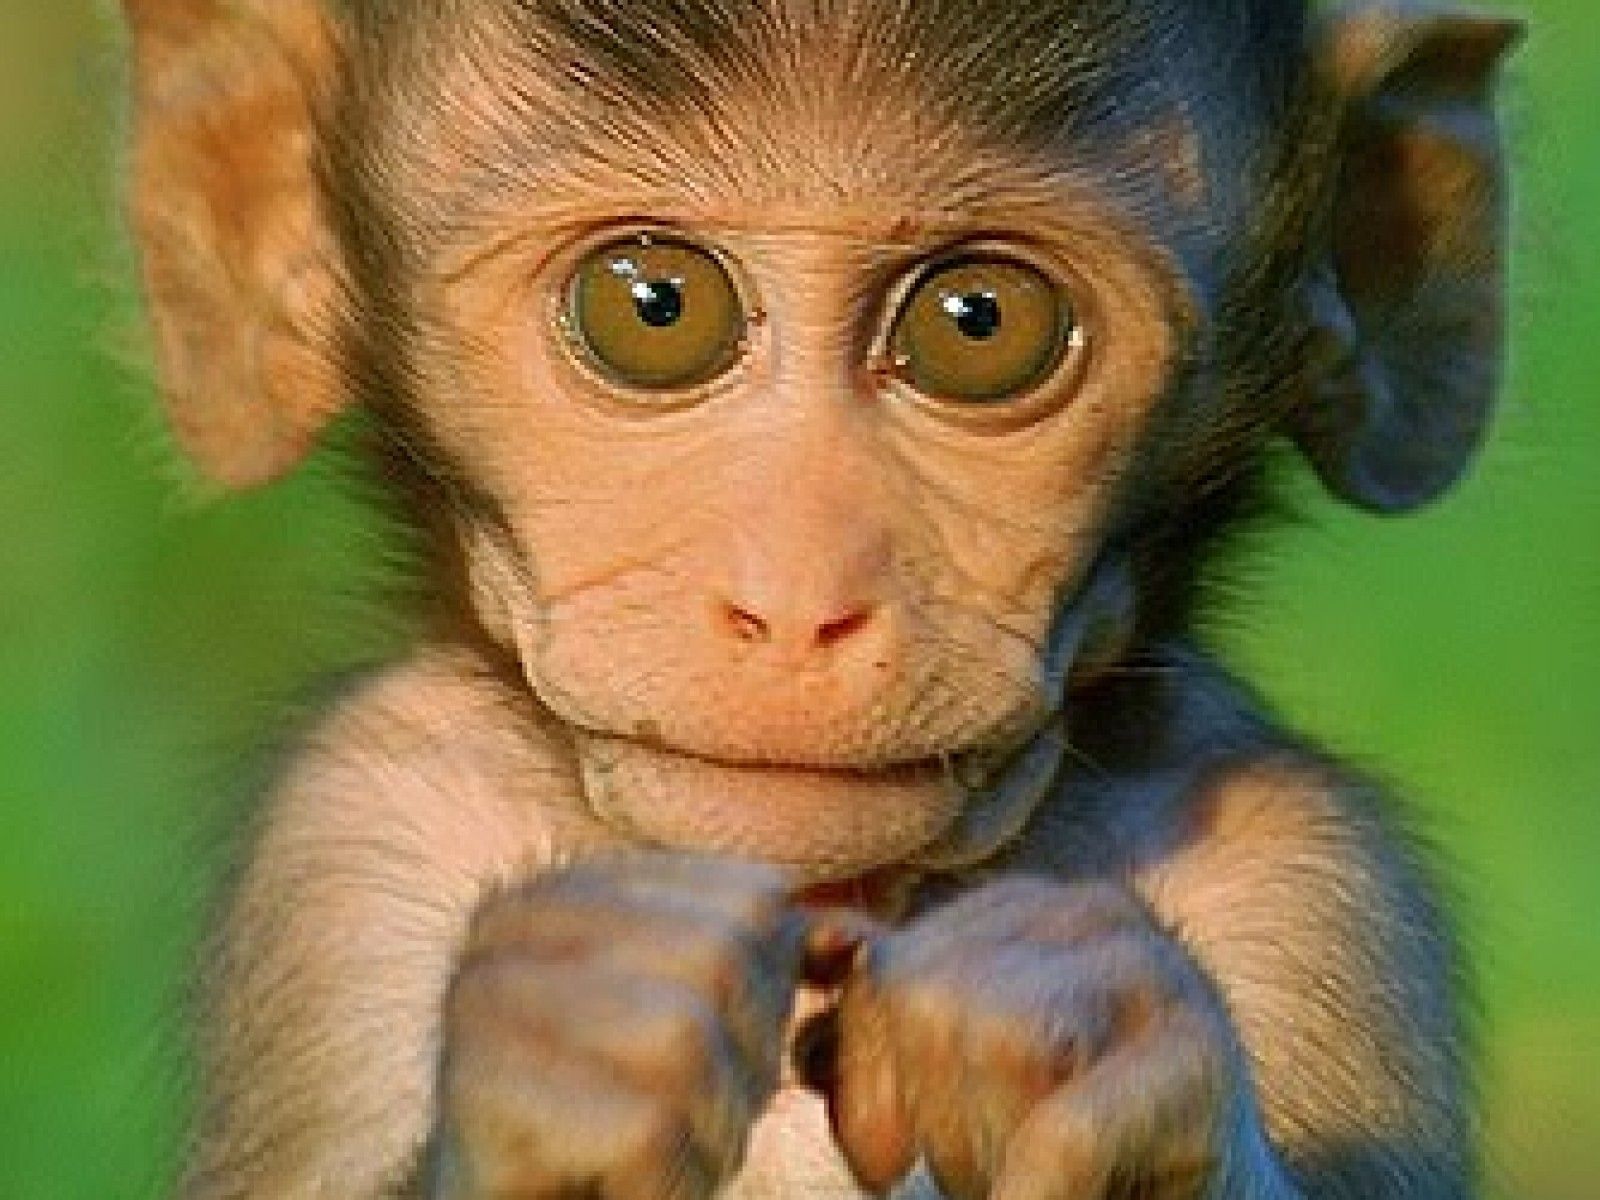 Cute Baby Monkeys - wallpaper.